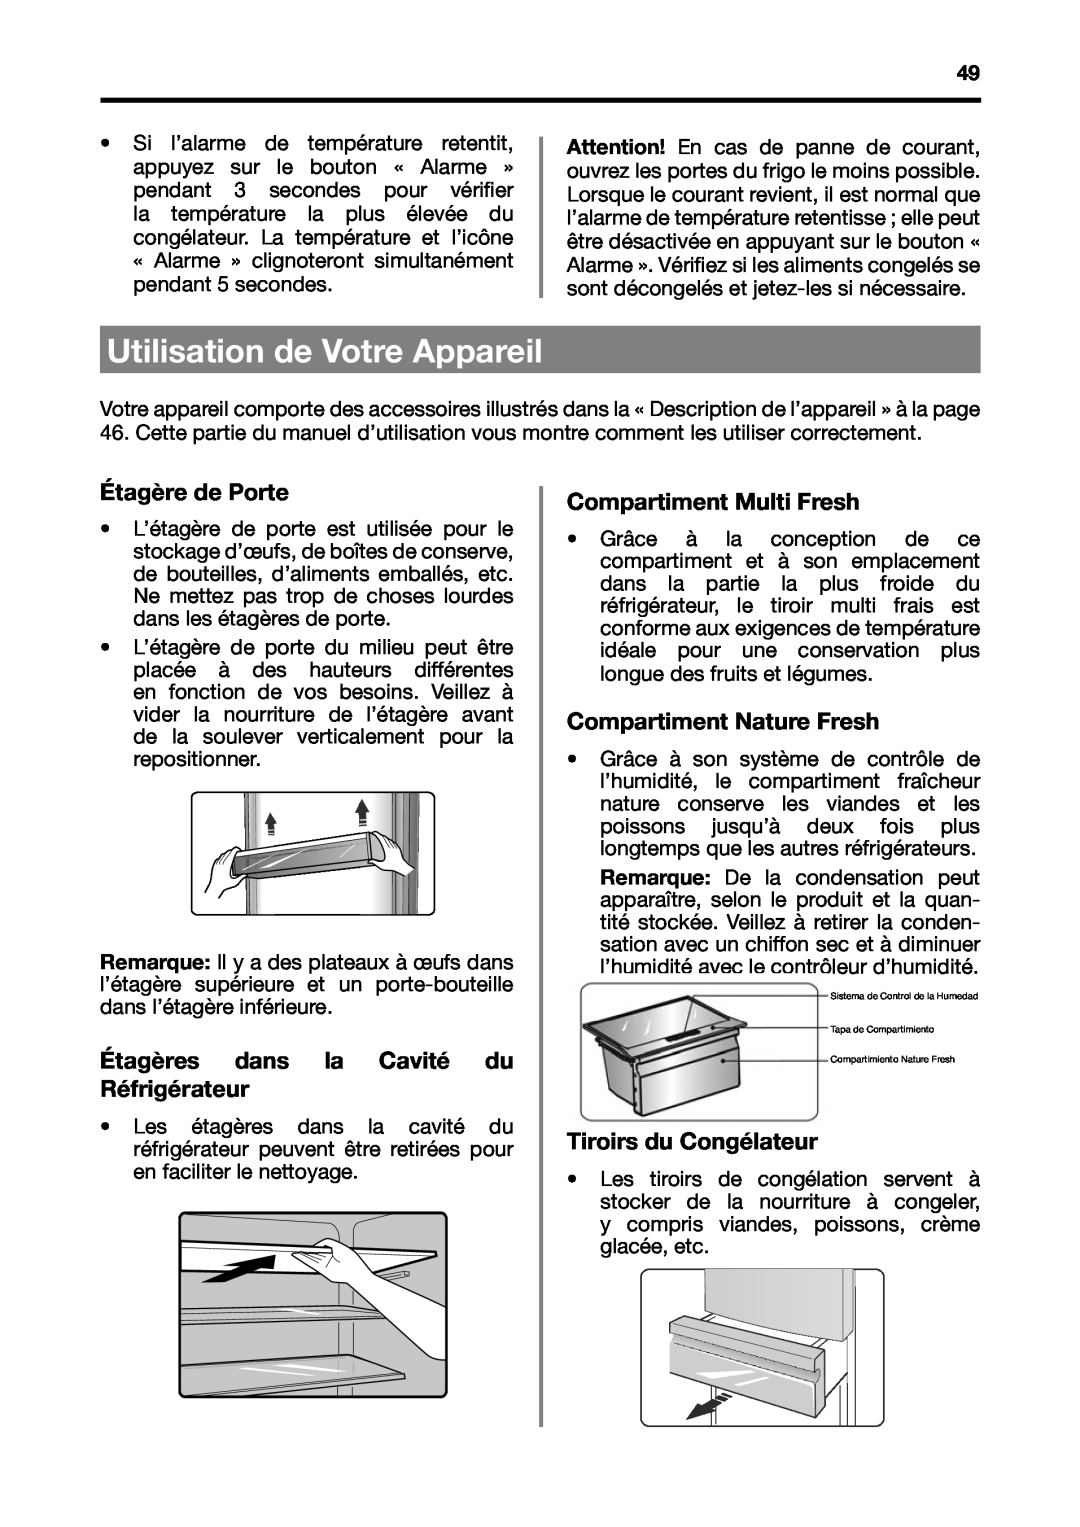 Fagor America BMF-200X manual Utilisation de Votre Appareil, Étagère de Porte, Étagères dans la Cavité du Réfrigérateur 